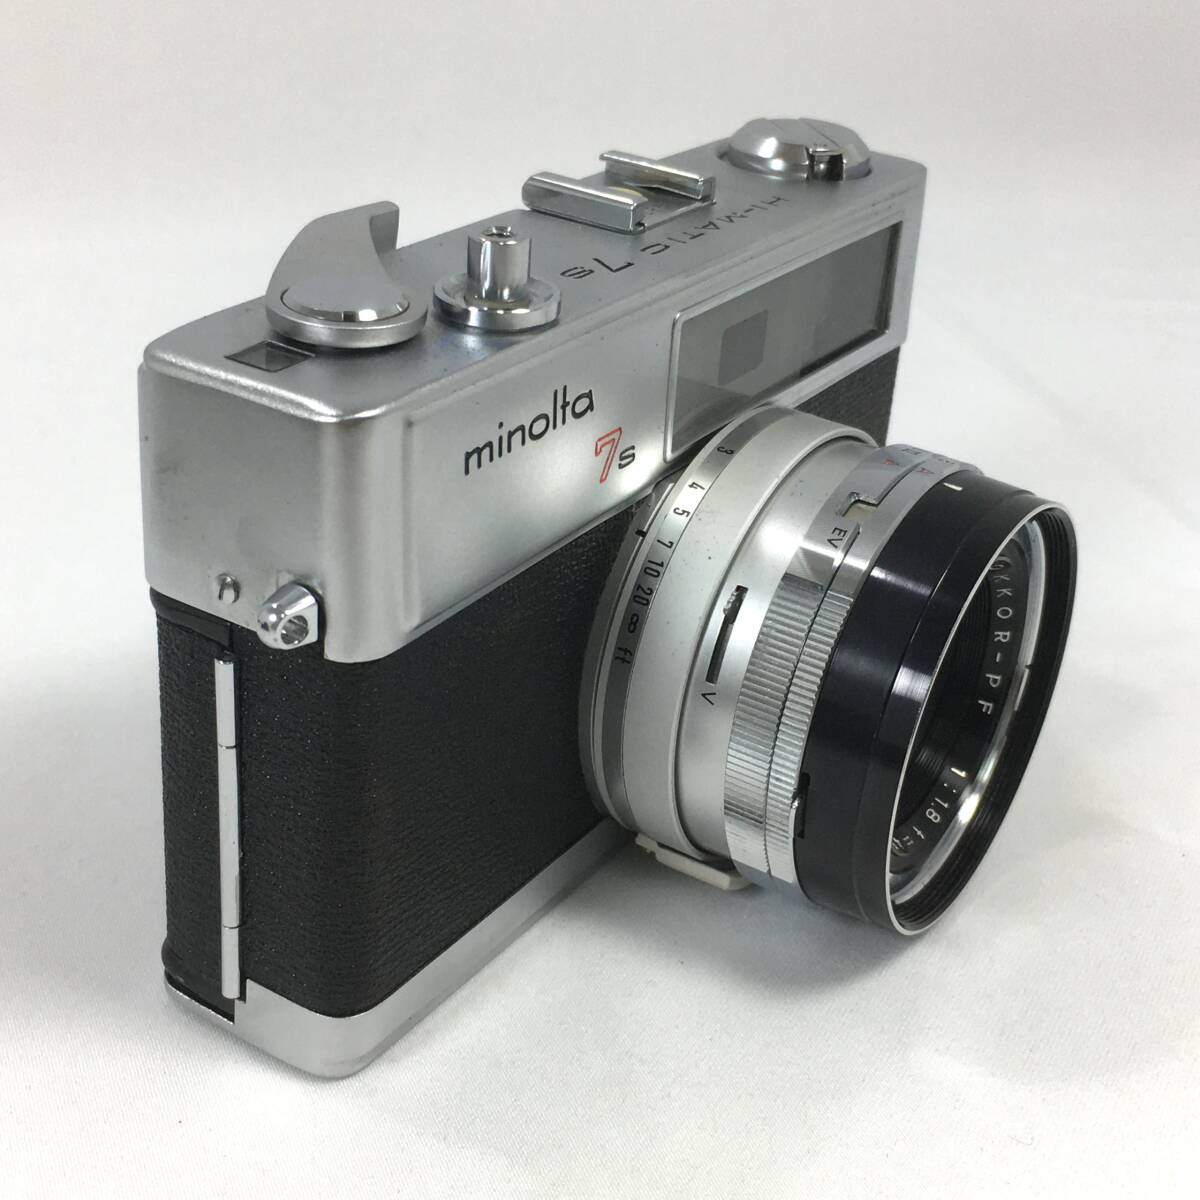 ミノルタ HI-MATIC 7S レンジファインダーカメラ MINOLTA ROKKOR-PF 1:1.8 f=45mm Minolta ハイマチック_画像4